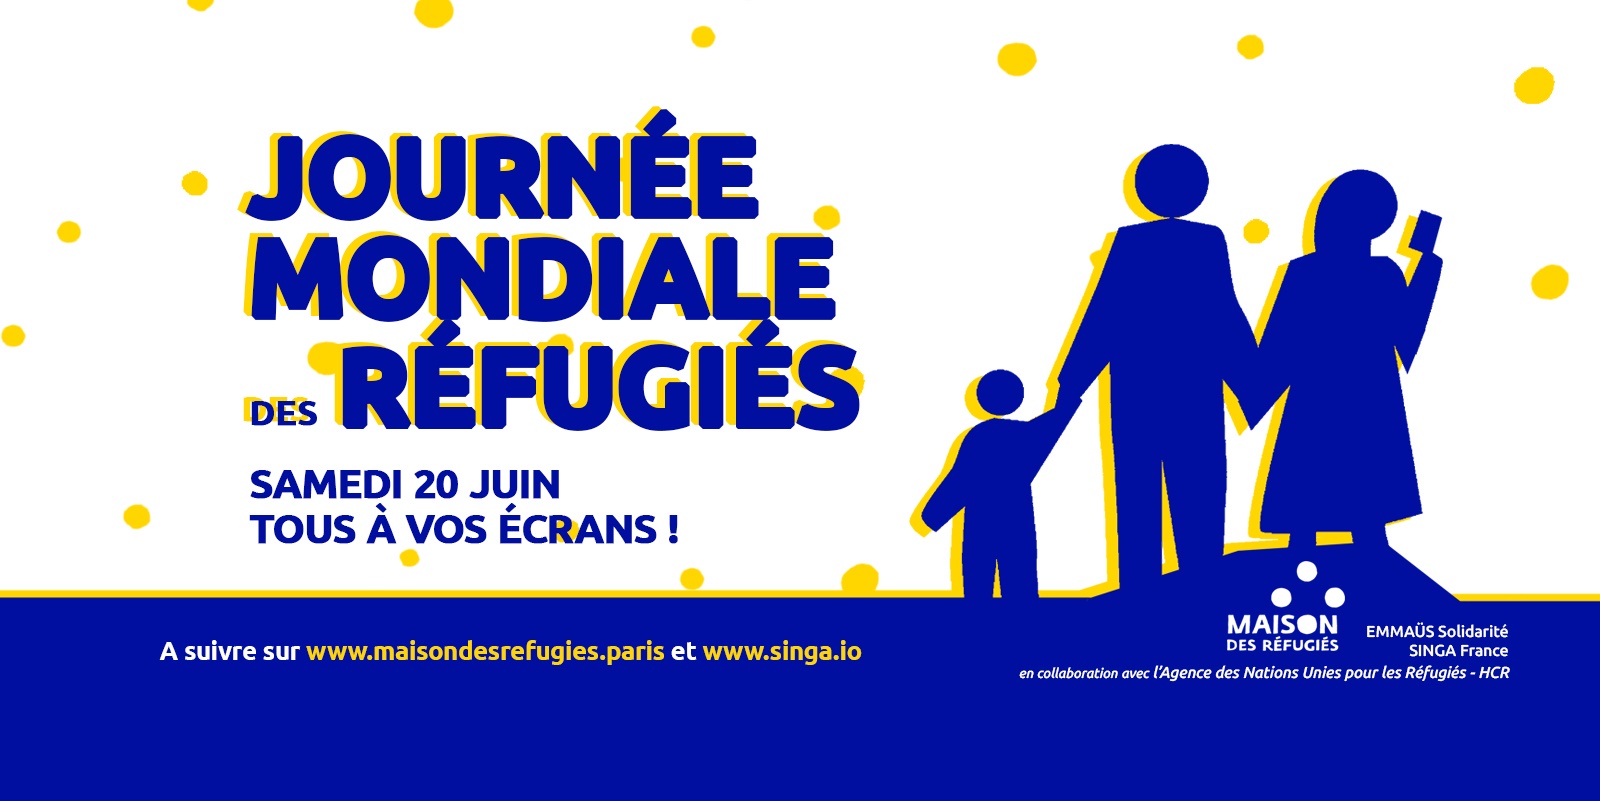 Journée Mondiale des réfugiés samedi 20 juin 20 : Live en direct de la Maison des réfugiés